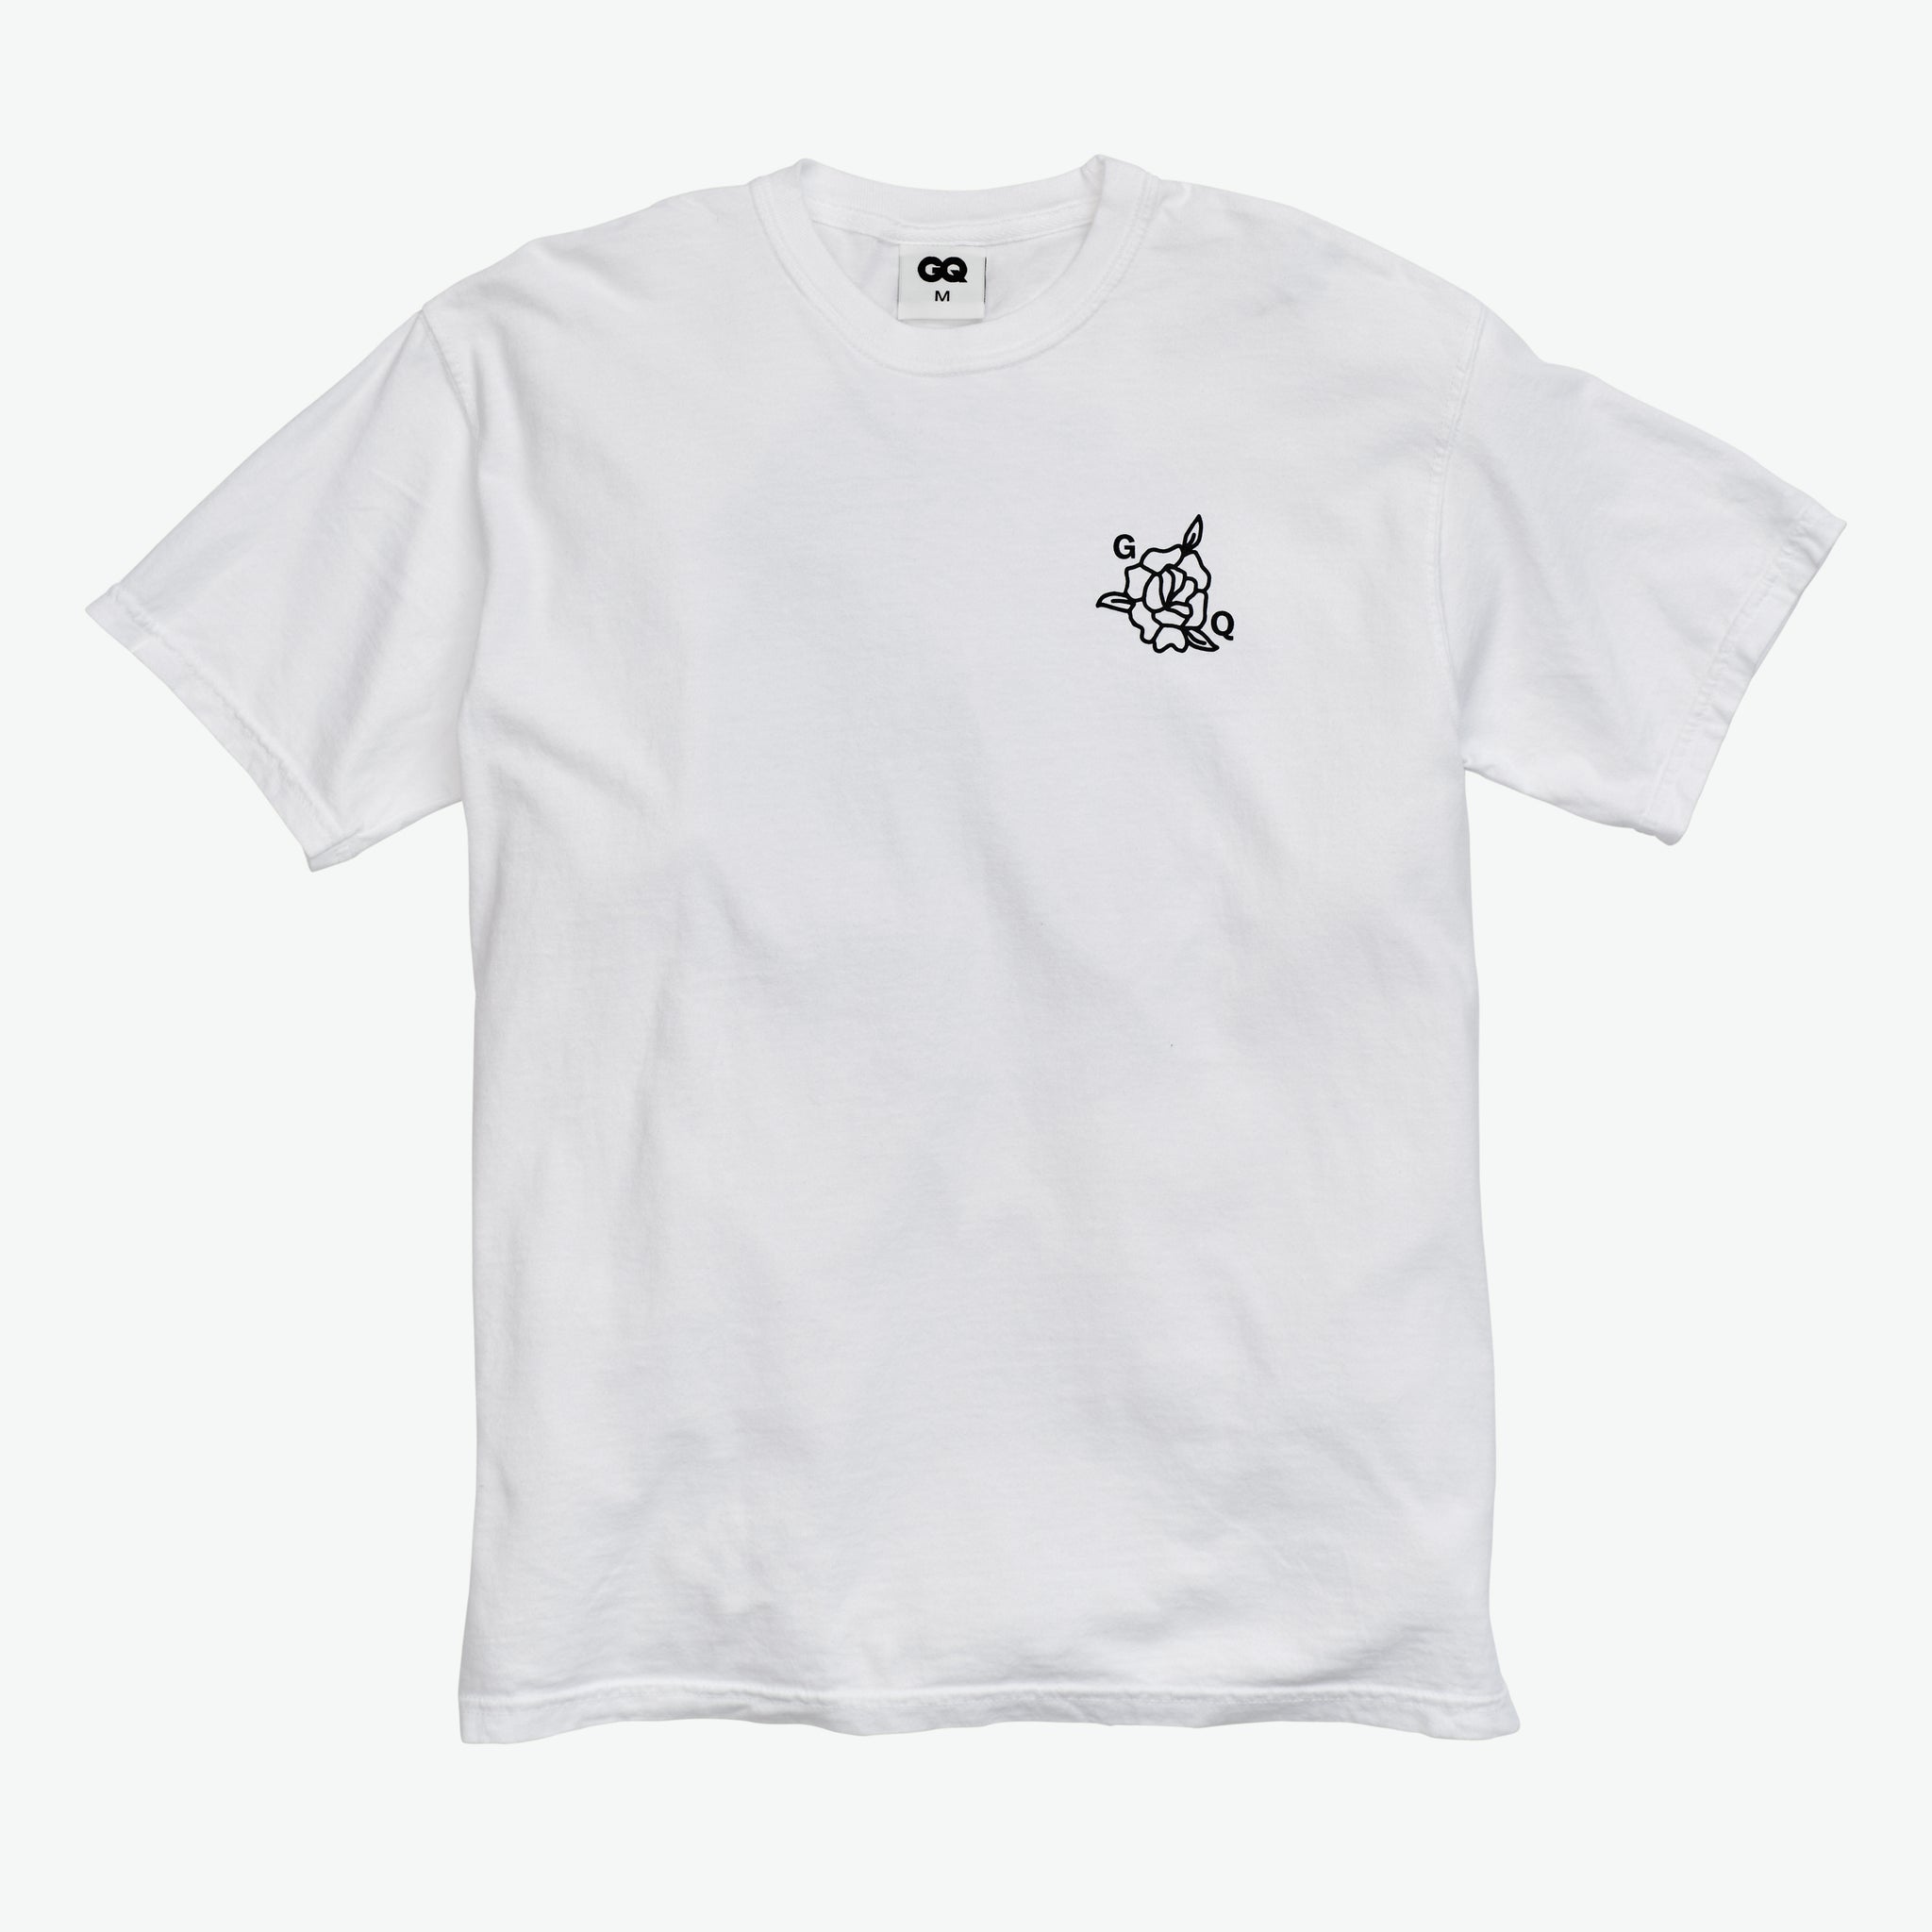 GQ Print Ain't Dead T-Shirt | GQ MERCH SHOP - The GQ Shop